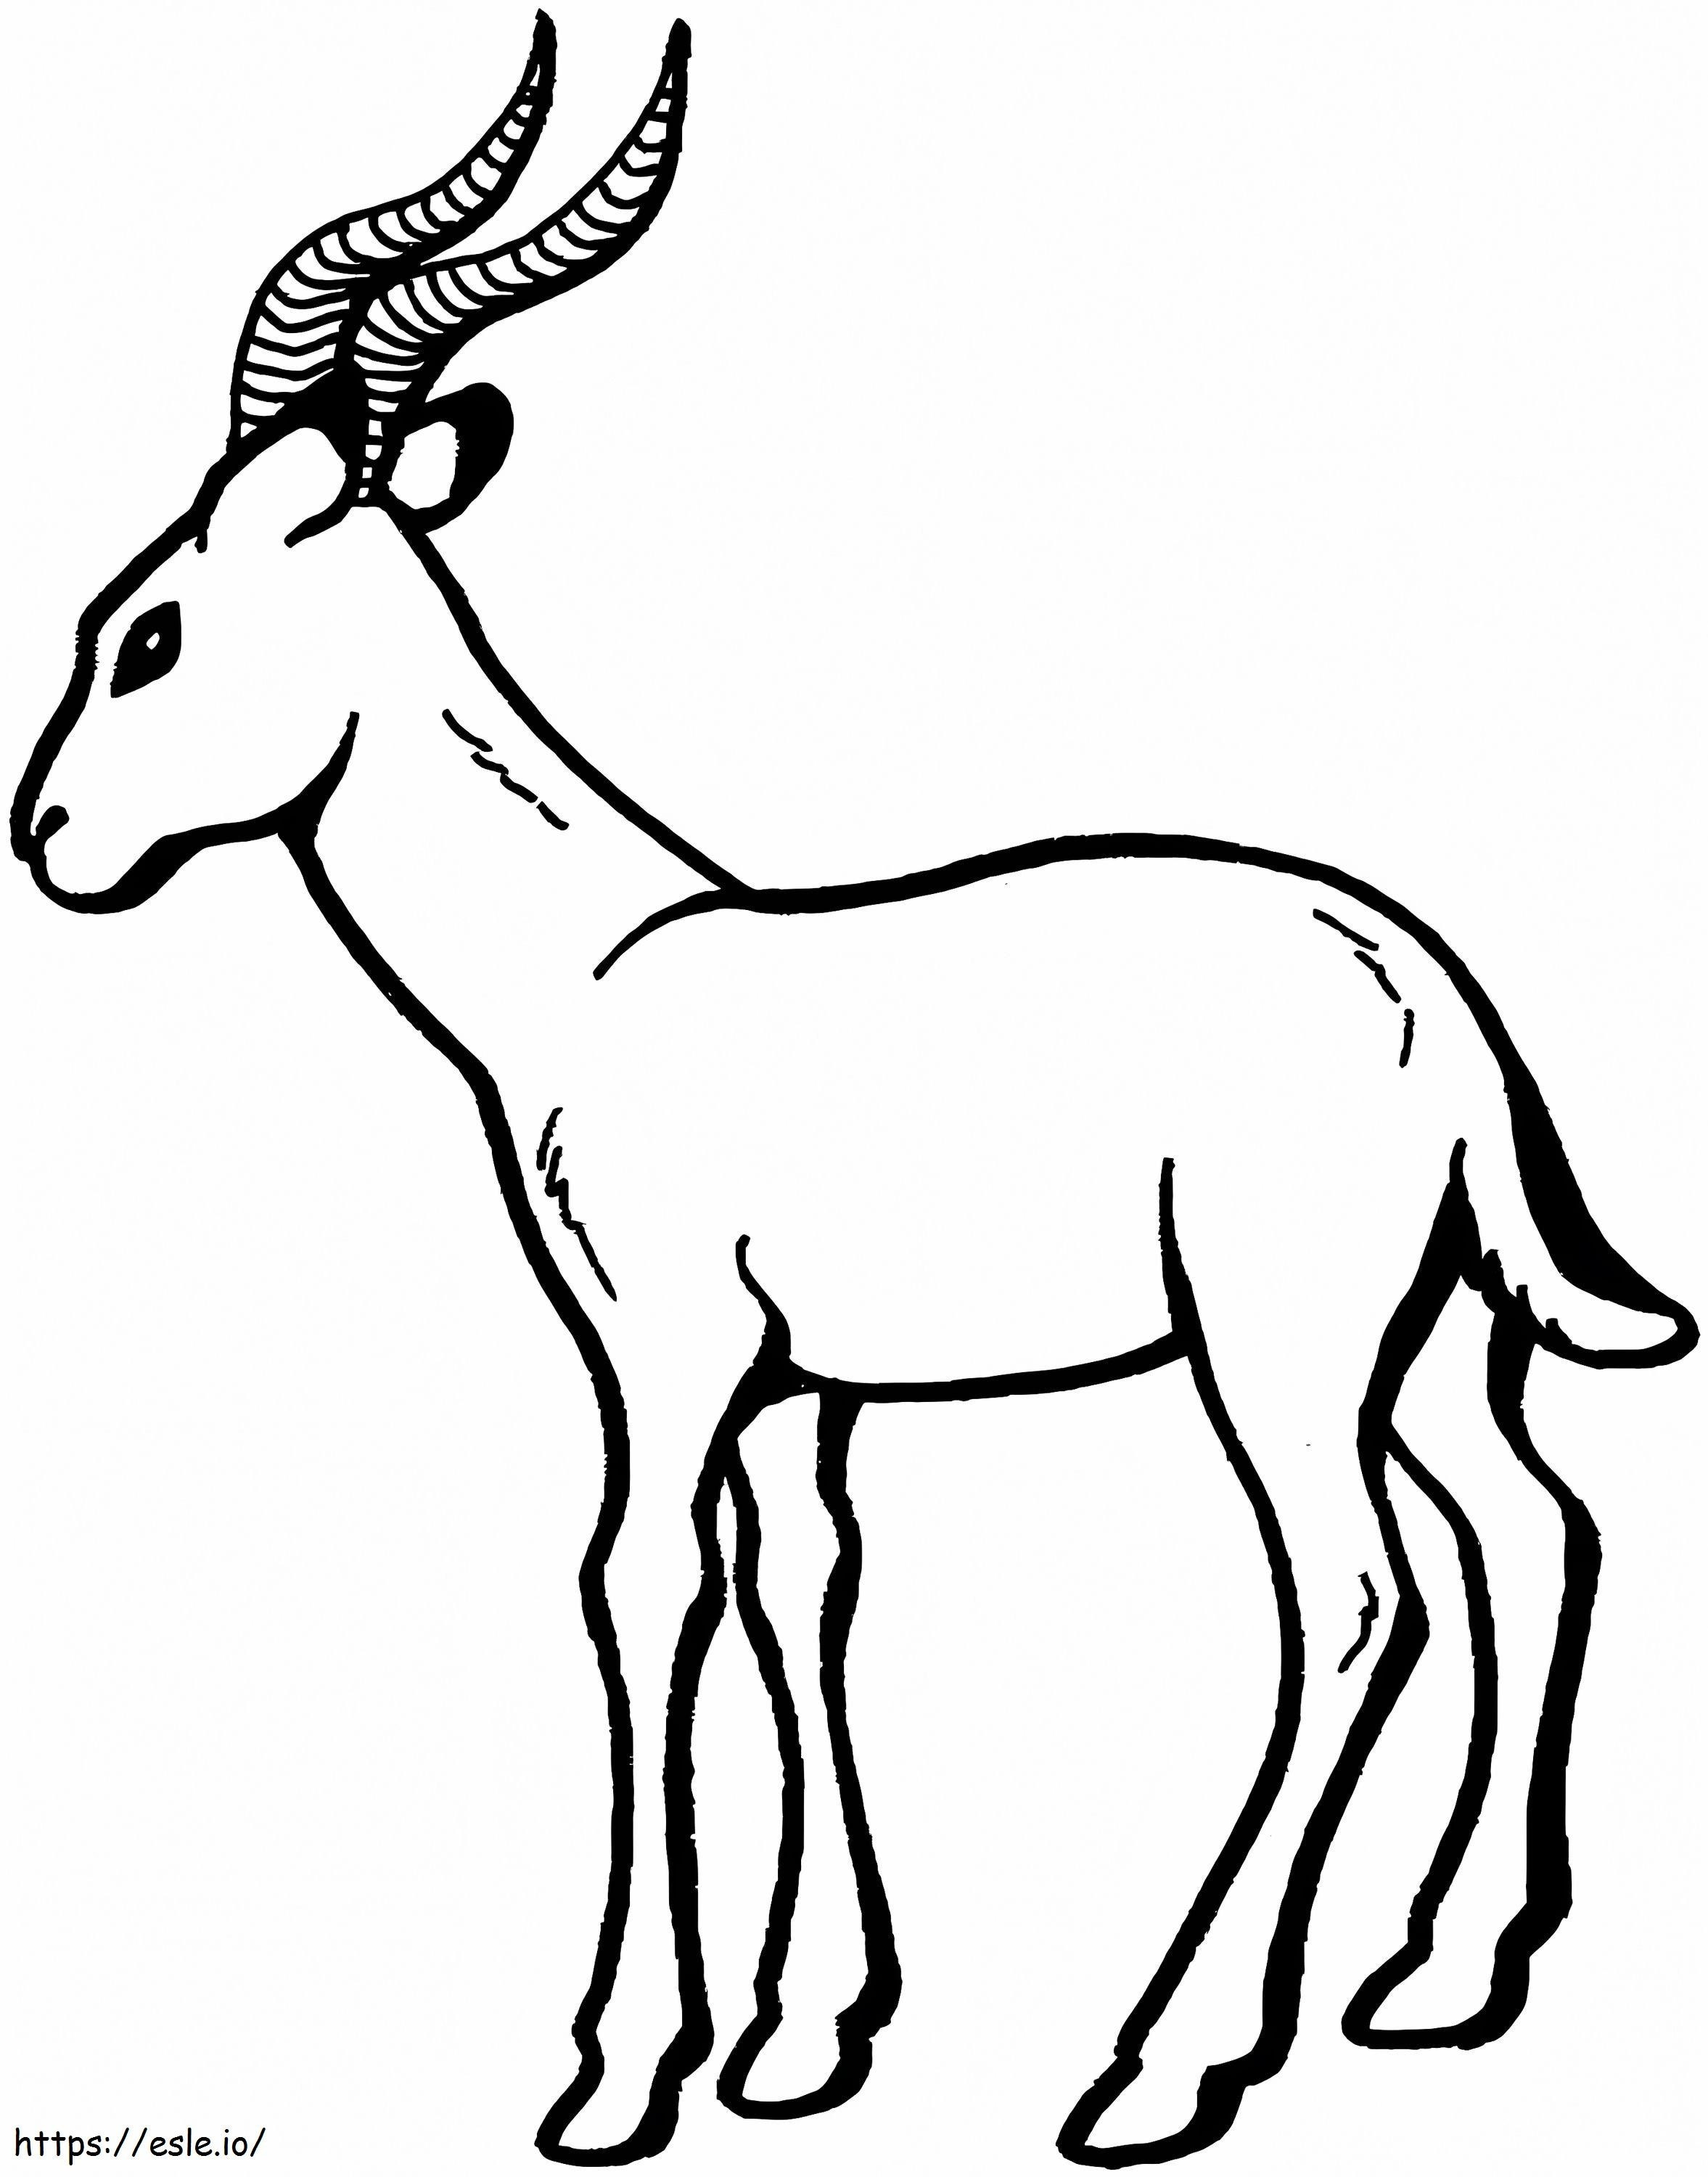 Normale Gazelle ausmalbilder